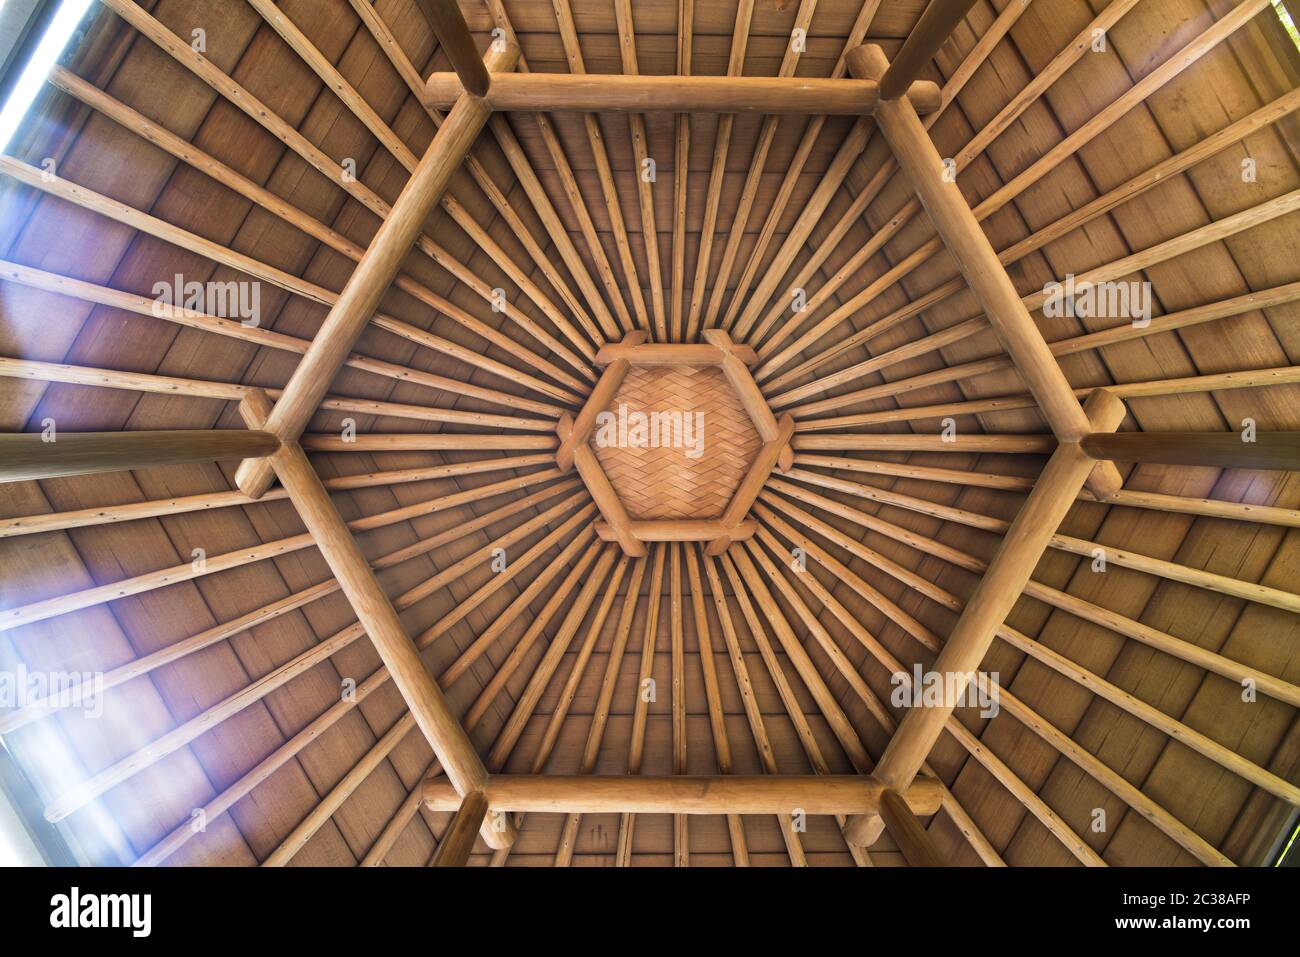 Sechseckige Form eines Korbdach und Bambus-Dach Boden des Pavillons Dach befindet sich auf der Mejiro Garden L Stockfoto